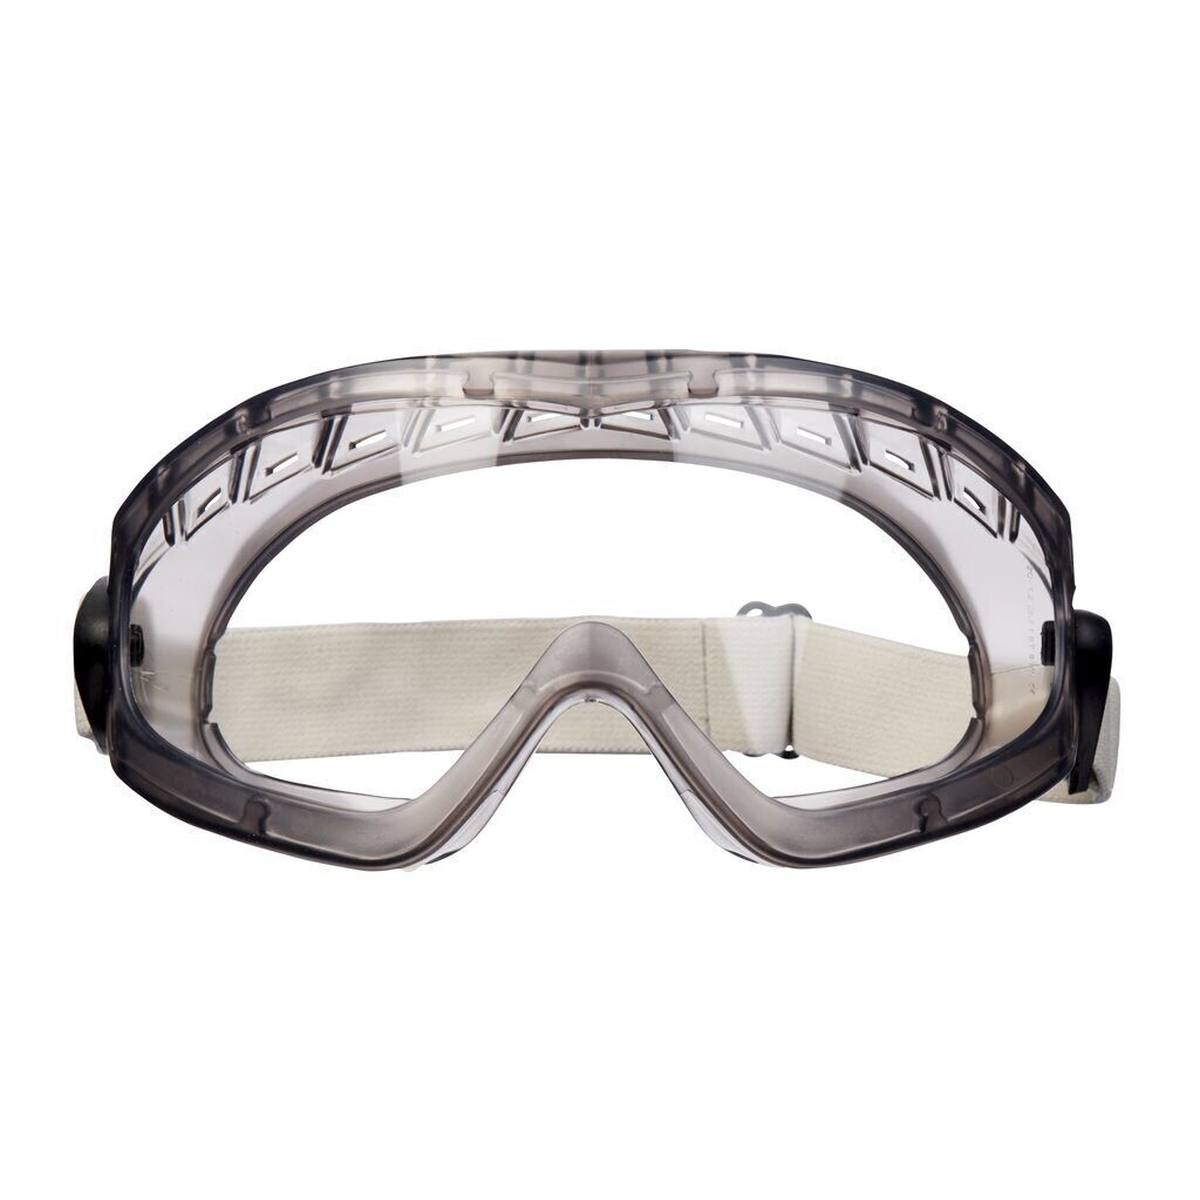 3M 2890 Gafas de visión total, AS/AF/UV, PC, con ranura de ventilación, bisagras ajustables